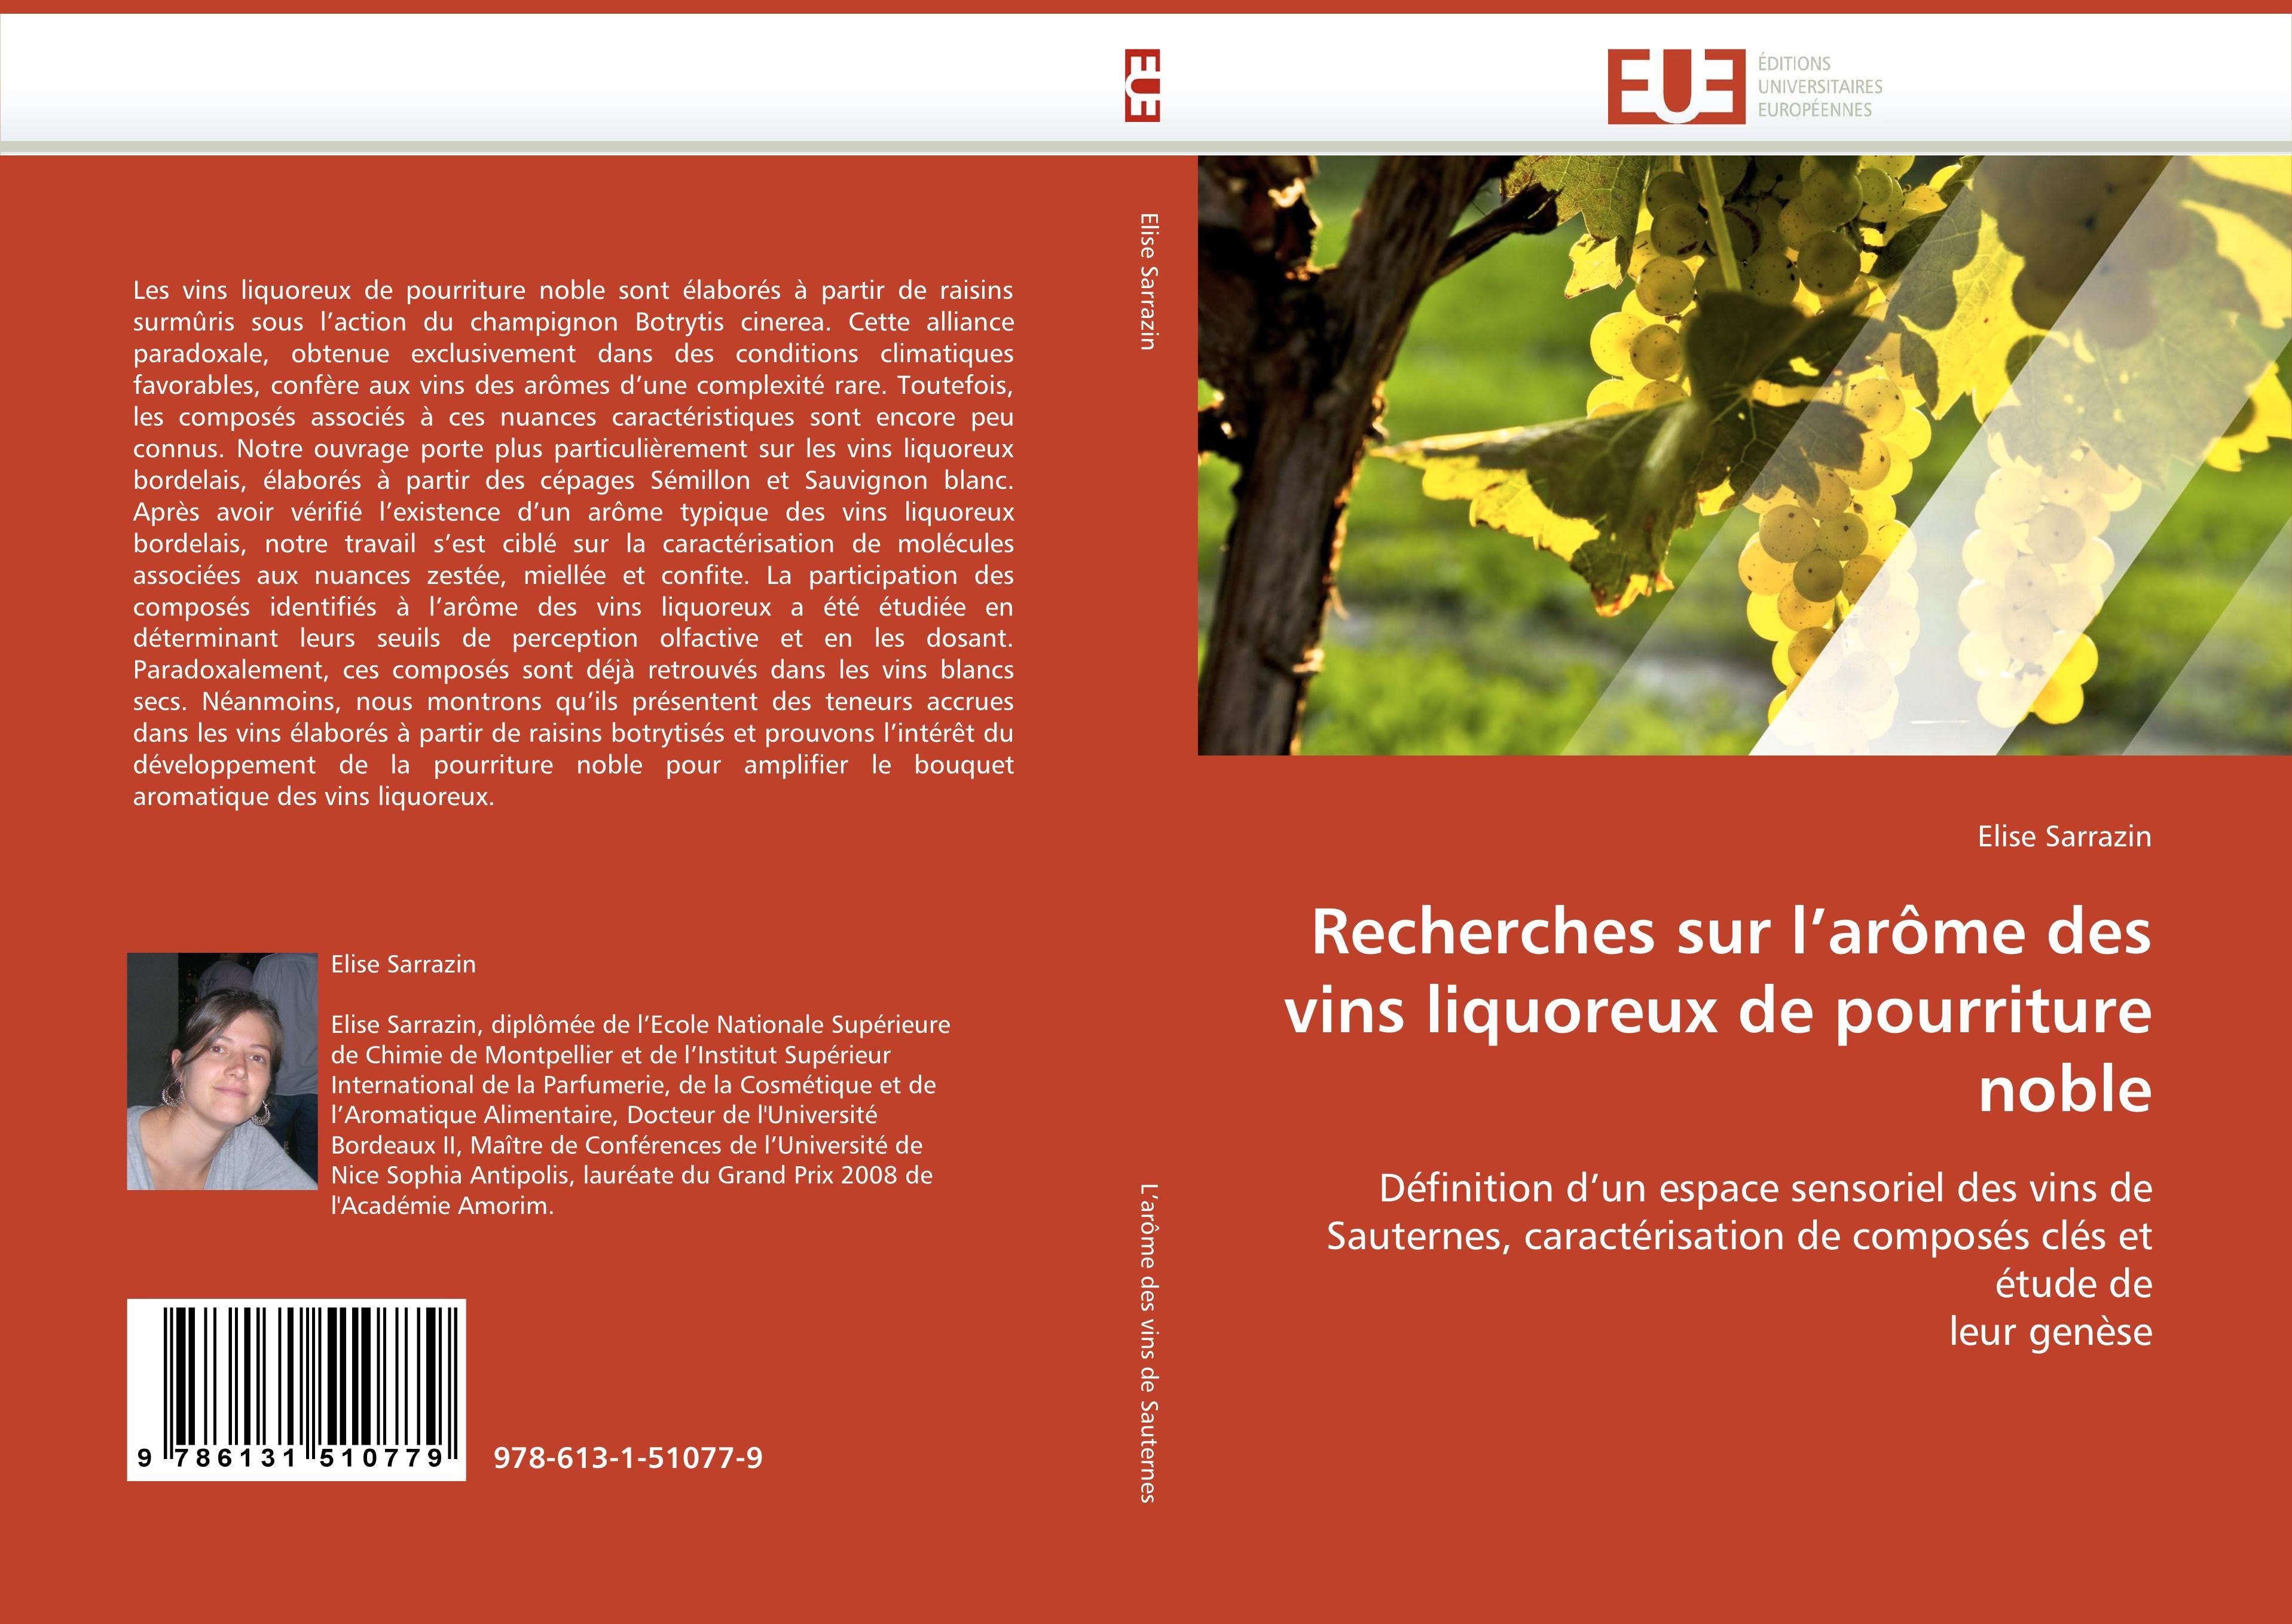 Recherches sur l arôme des vins liquoreux de pourriture noble - Elise Sarrazin